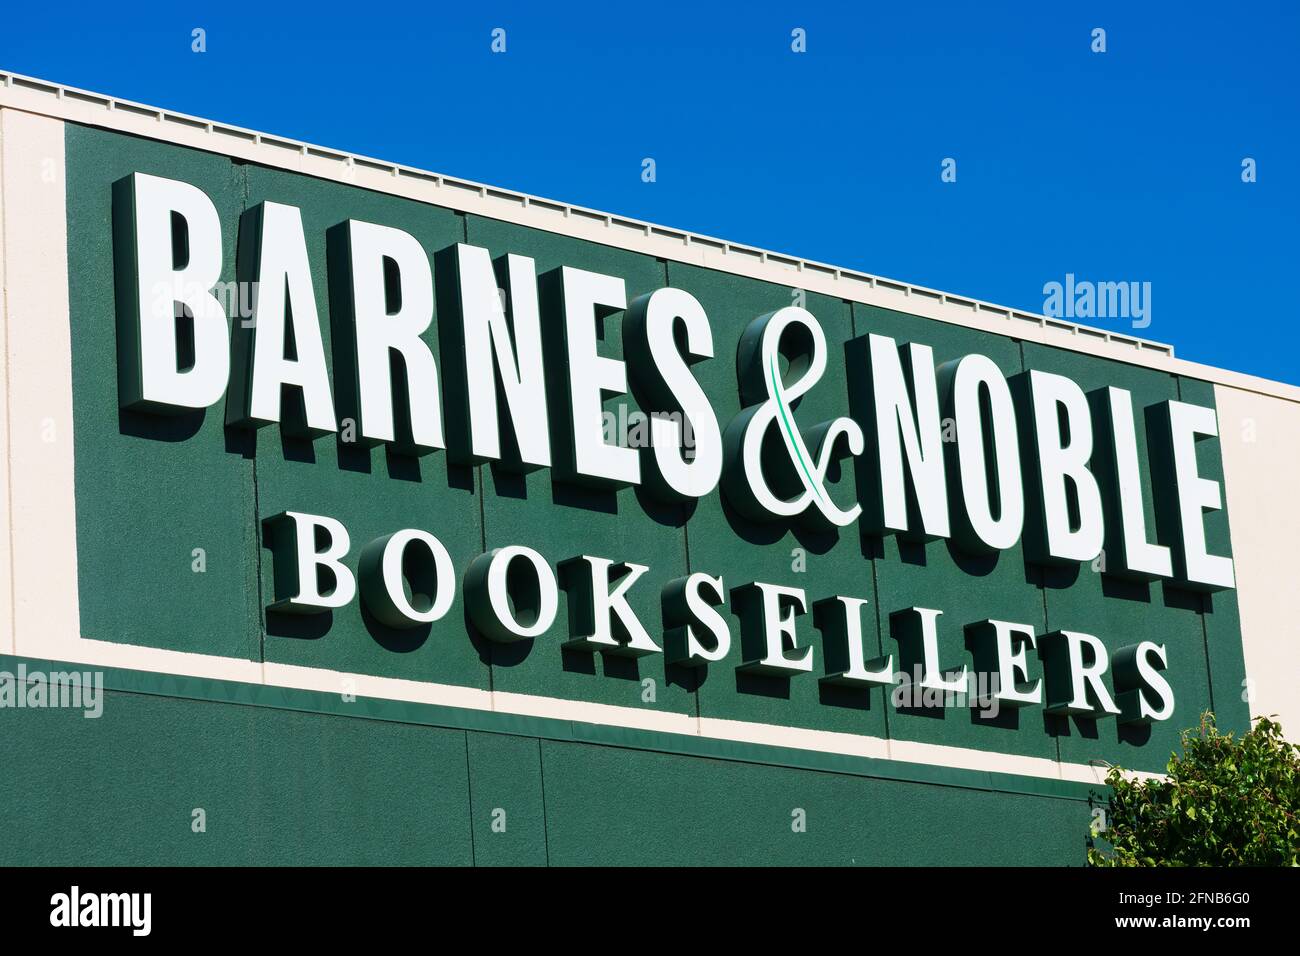 Les libraires Barnes et Noble signent, logo sur la façade de la librairie de la chaîne de vente au détail - Santa Clara, Californie, États-Unis - 2021 Banque D'Images